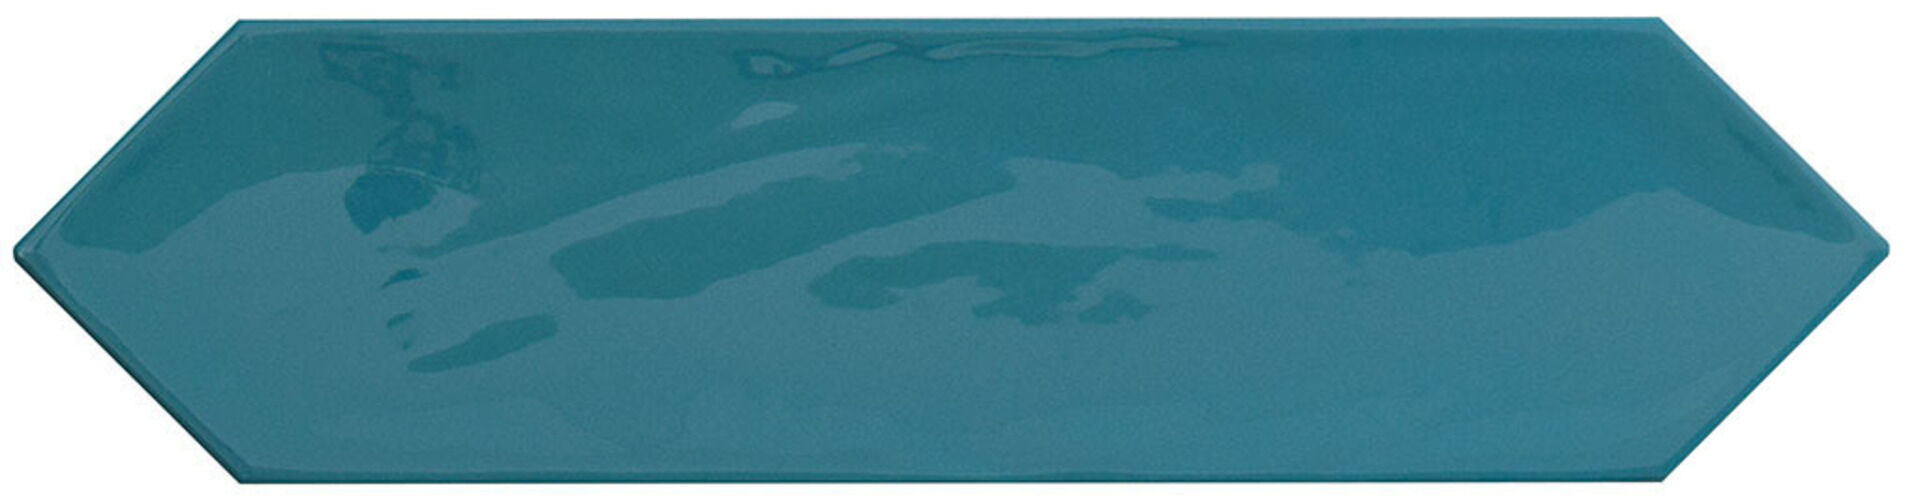 Керамическая плитка KANE PICKET MARINE 7,5*30 / коллекция KANE / производитель Cifre / страна Испания